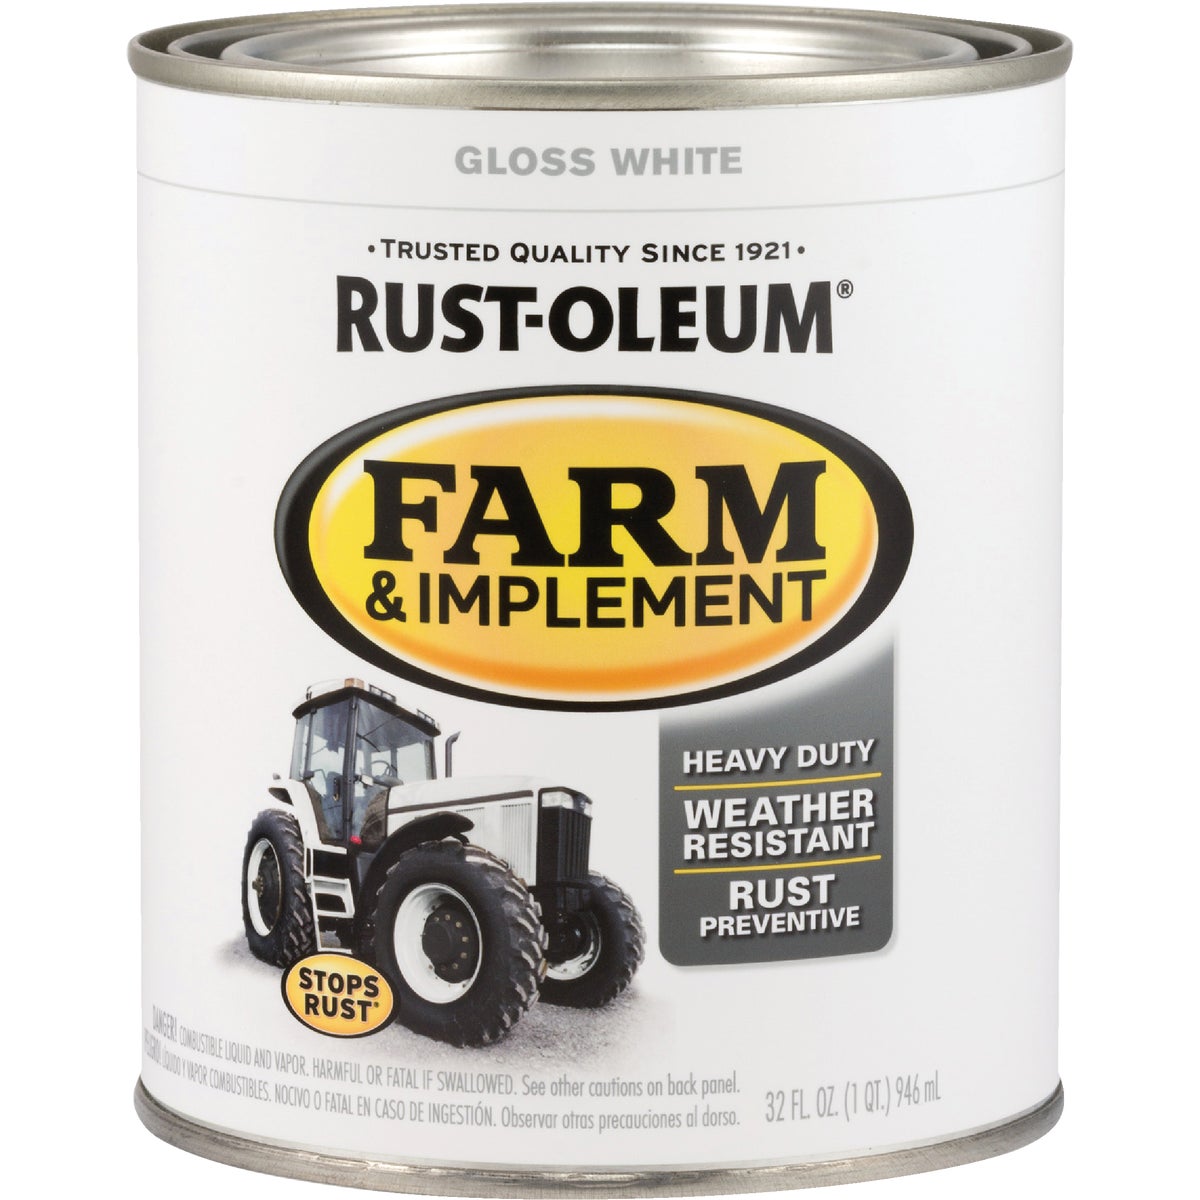 Rust-Oleum 1 Quart White Gloss Farm & Implement Enamel